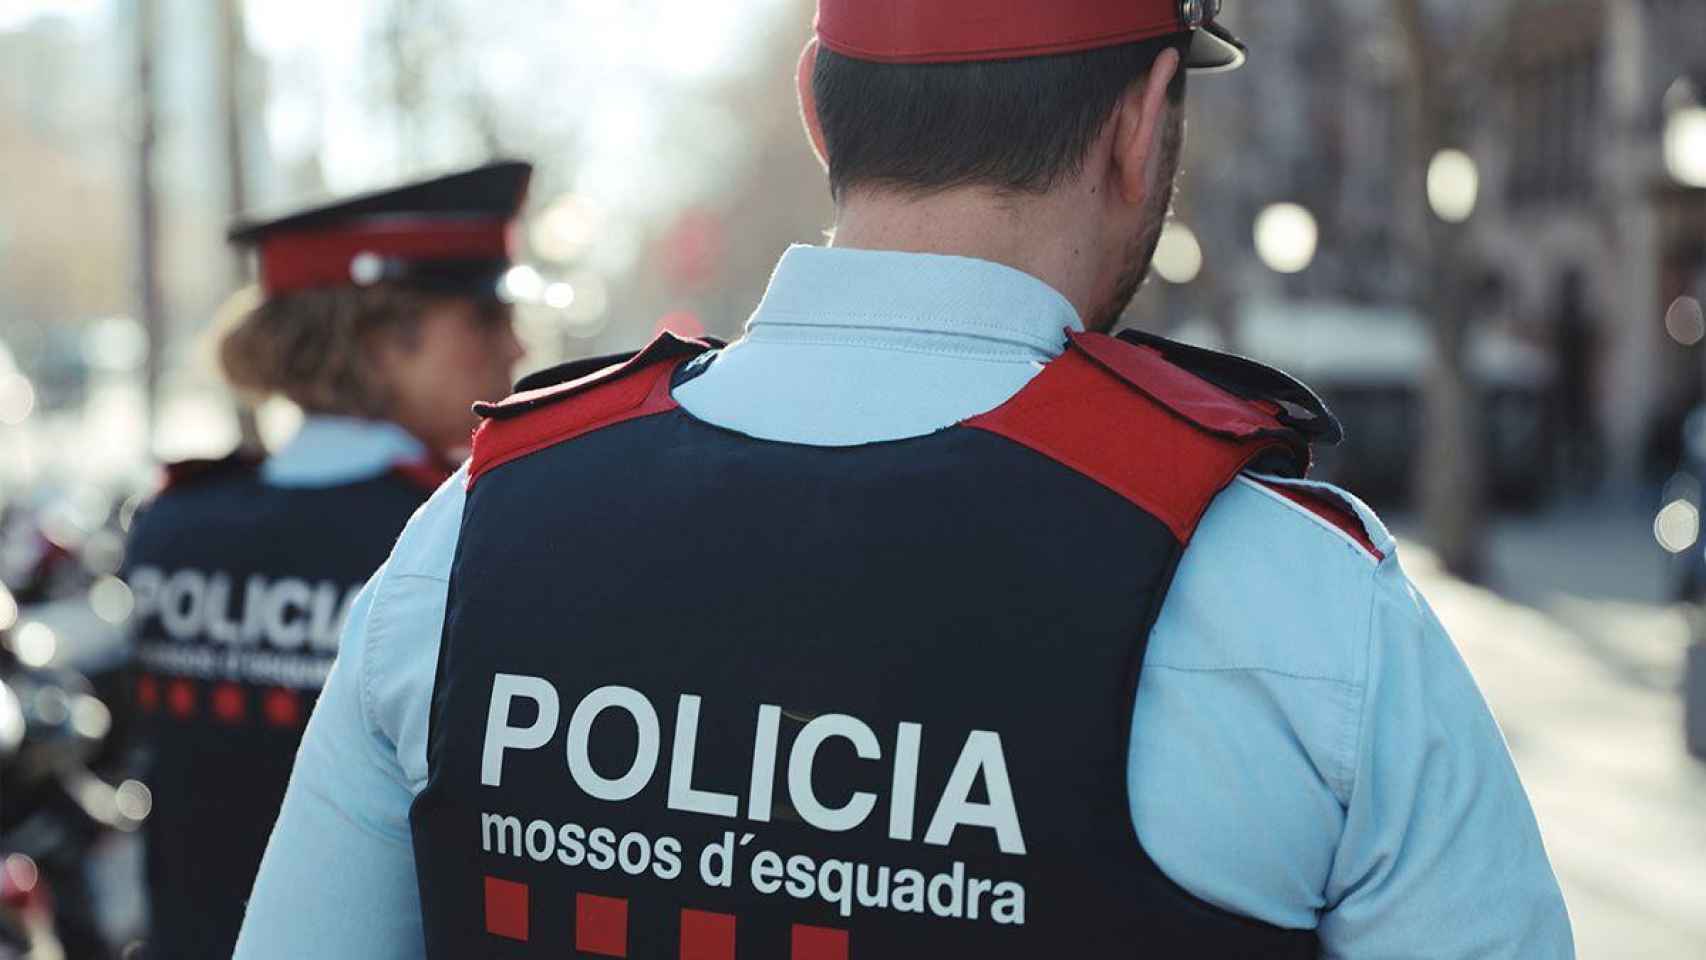 Dos agentes de los Mossos patrullan por la calle / MOSSOS D'ESQUADRA